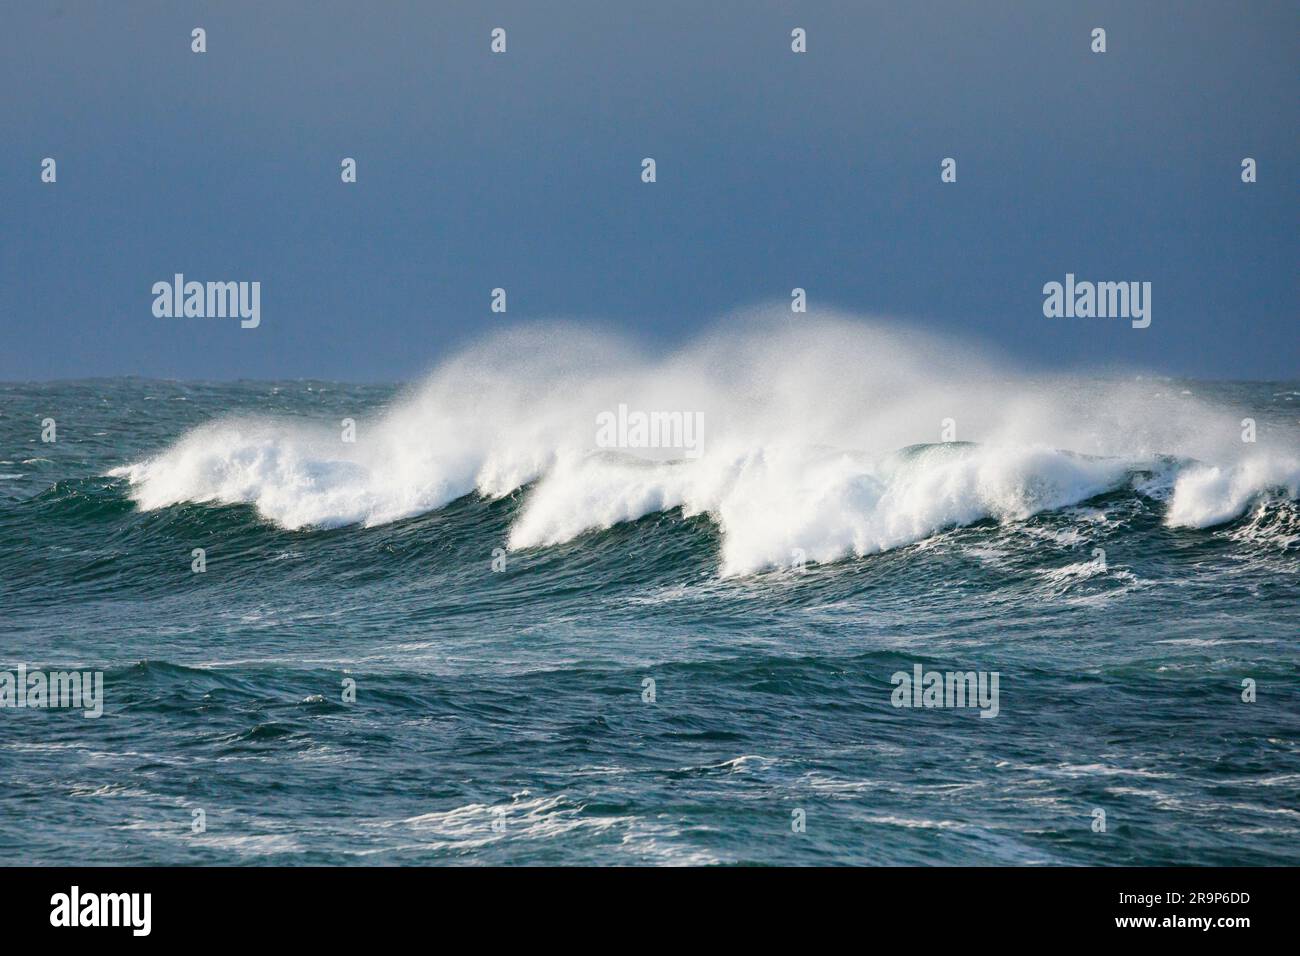 Eine große Welle brach auf dem offenen Meer vor Brest, Frankreich Stockfoto